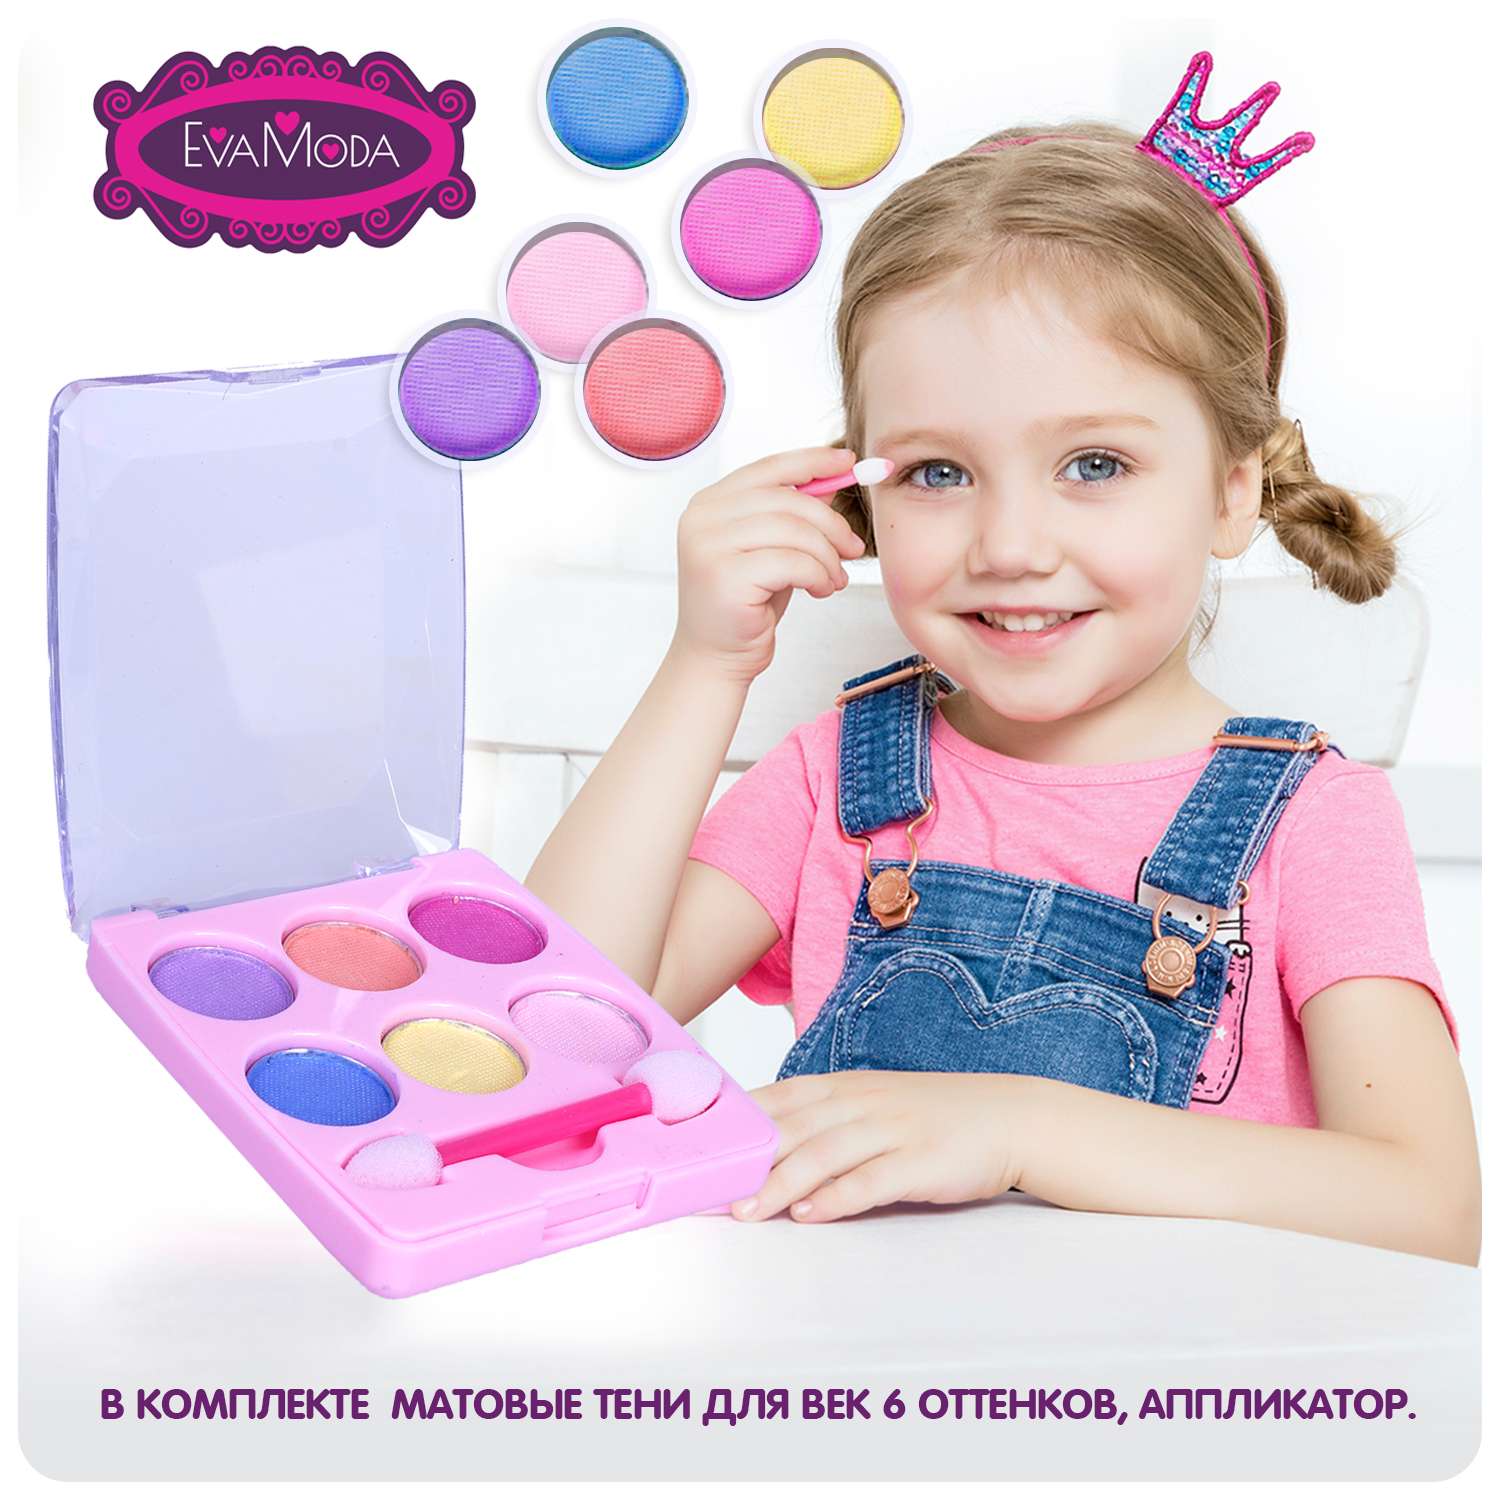 Набор детской косметики BONDIBON матовые тени в розовом футляре серия Eva Moda - фото 2